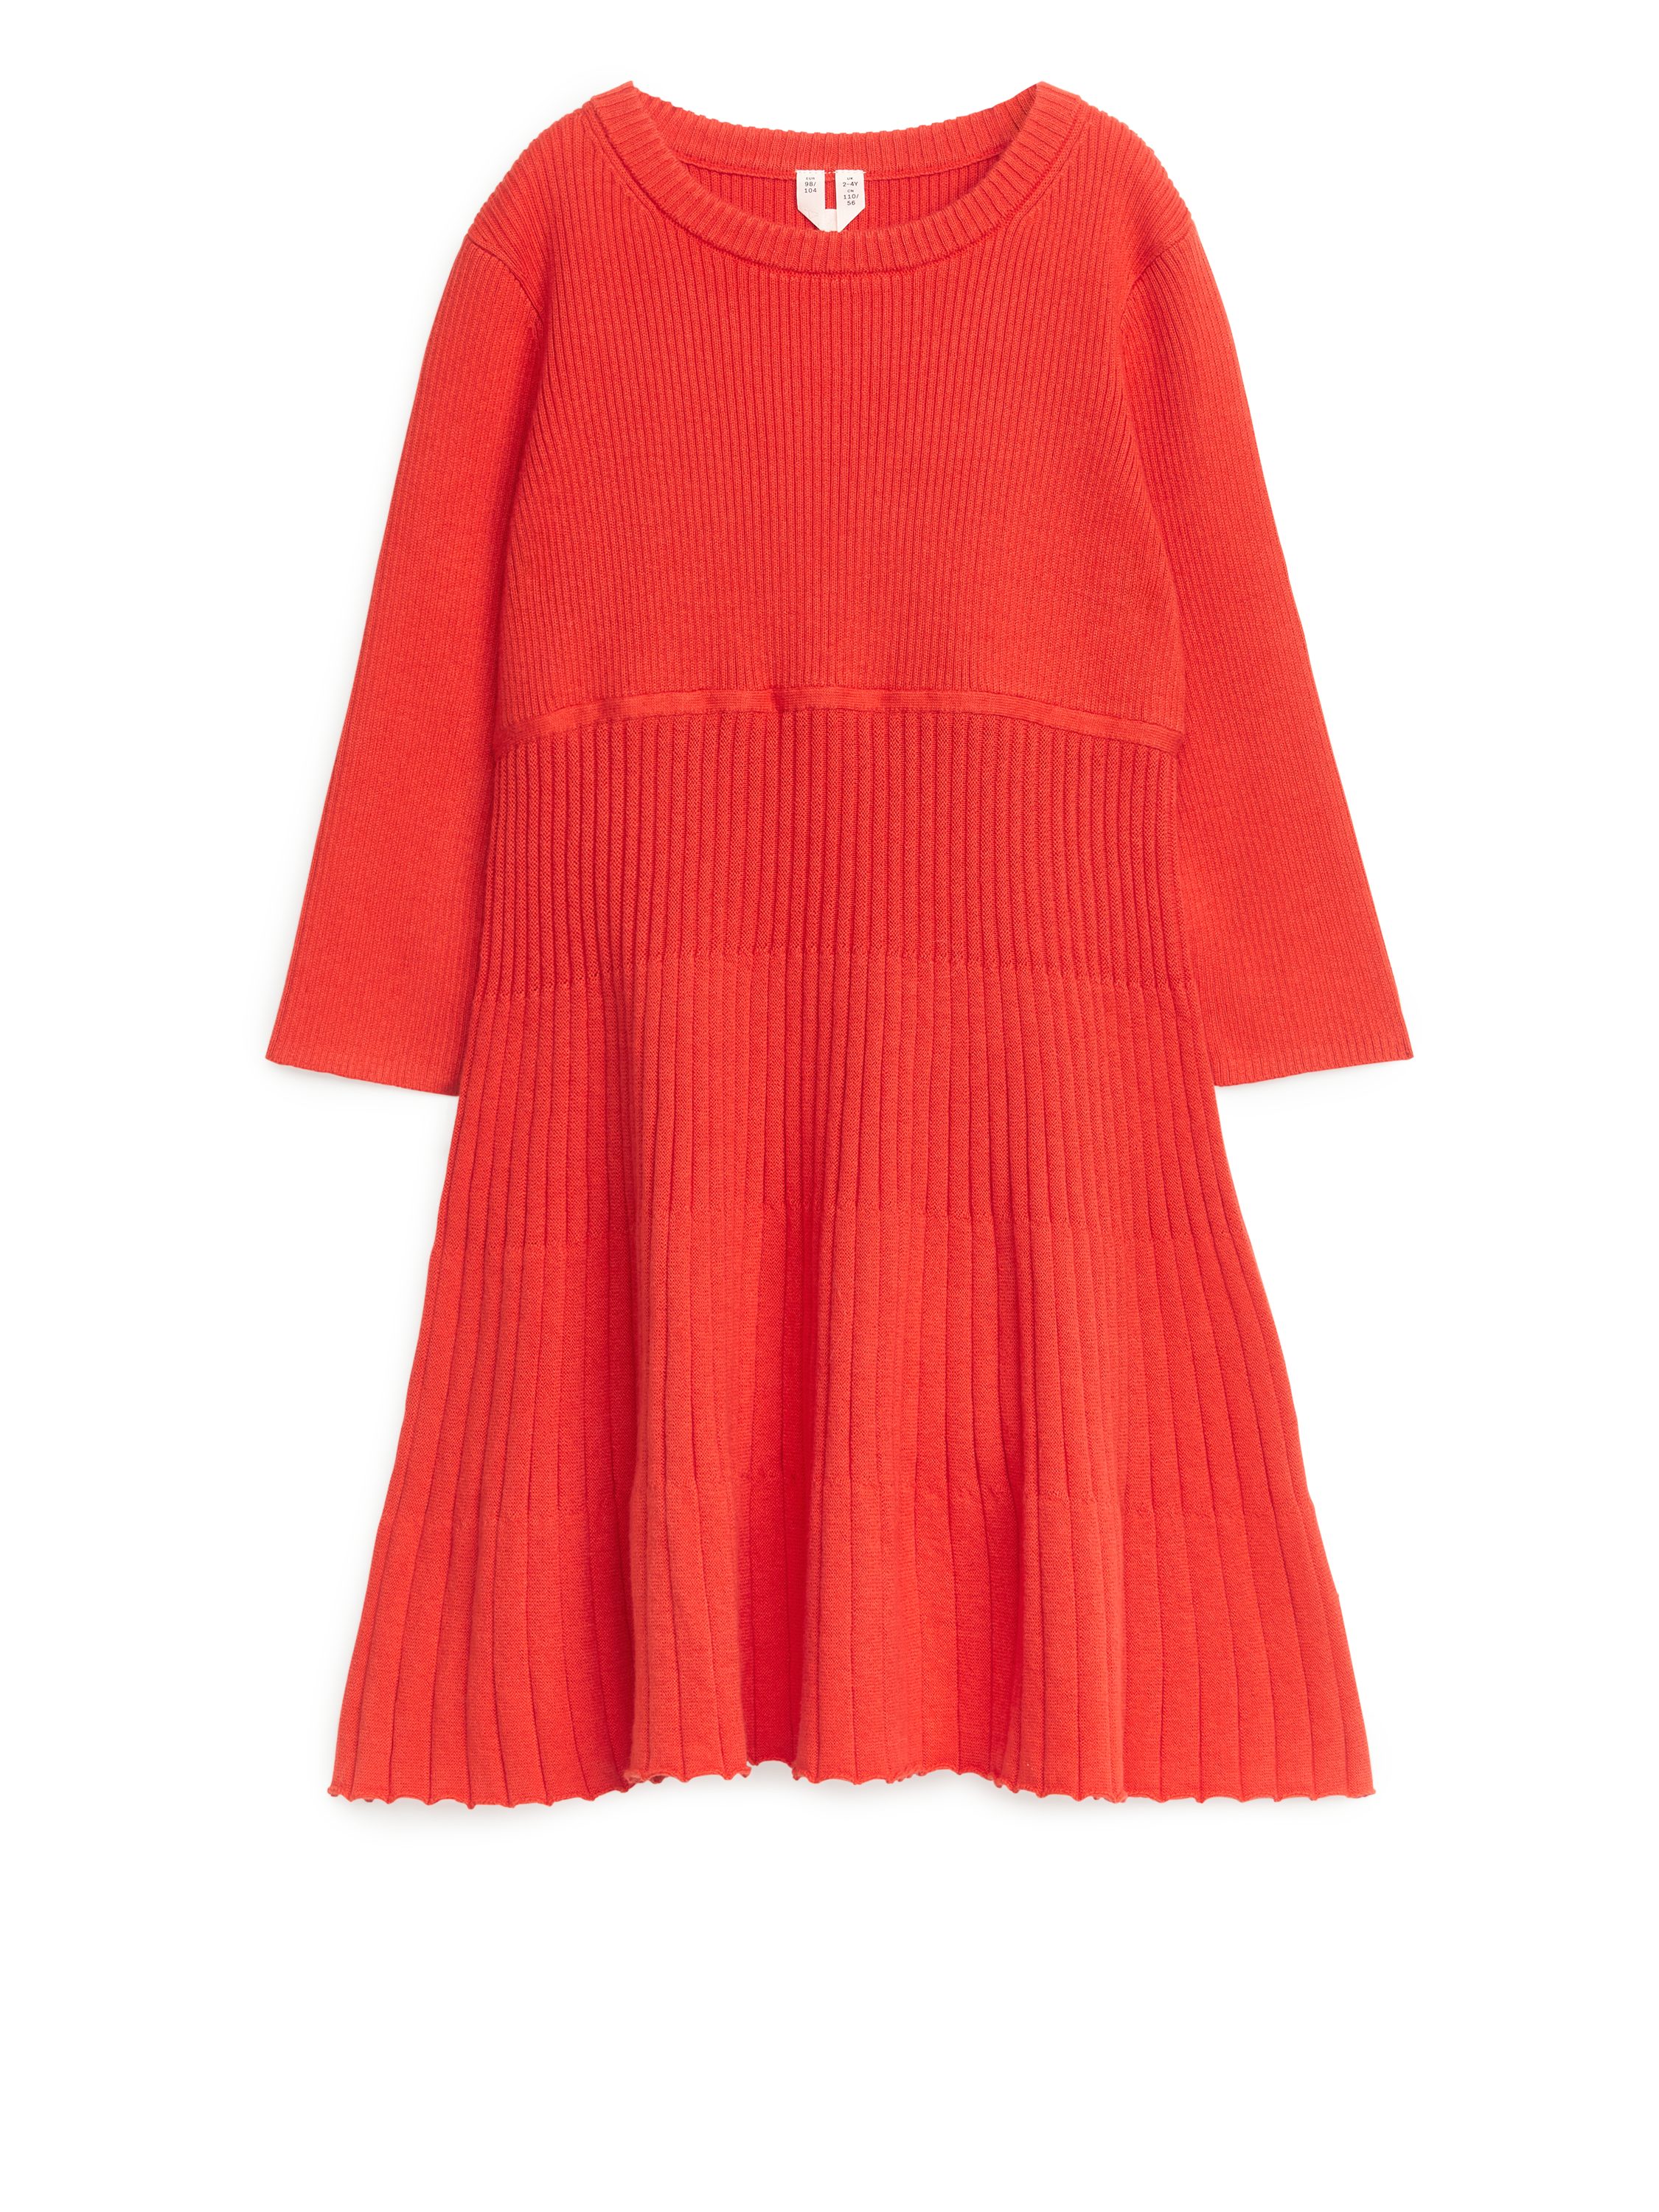 Billede af Arket Rib Knitted Dress Bright Red, Kjoler I størrelse 86/92